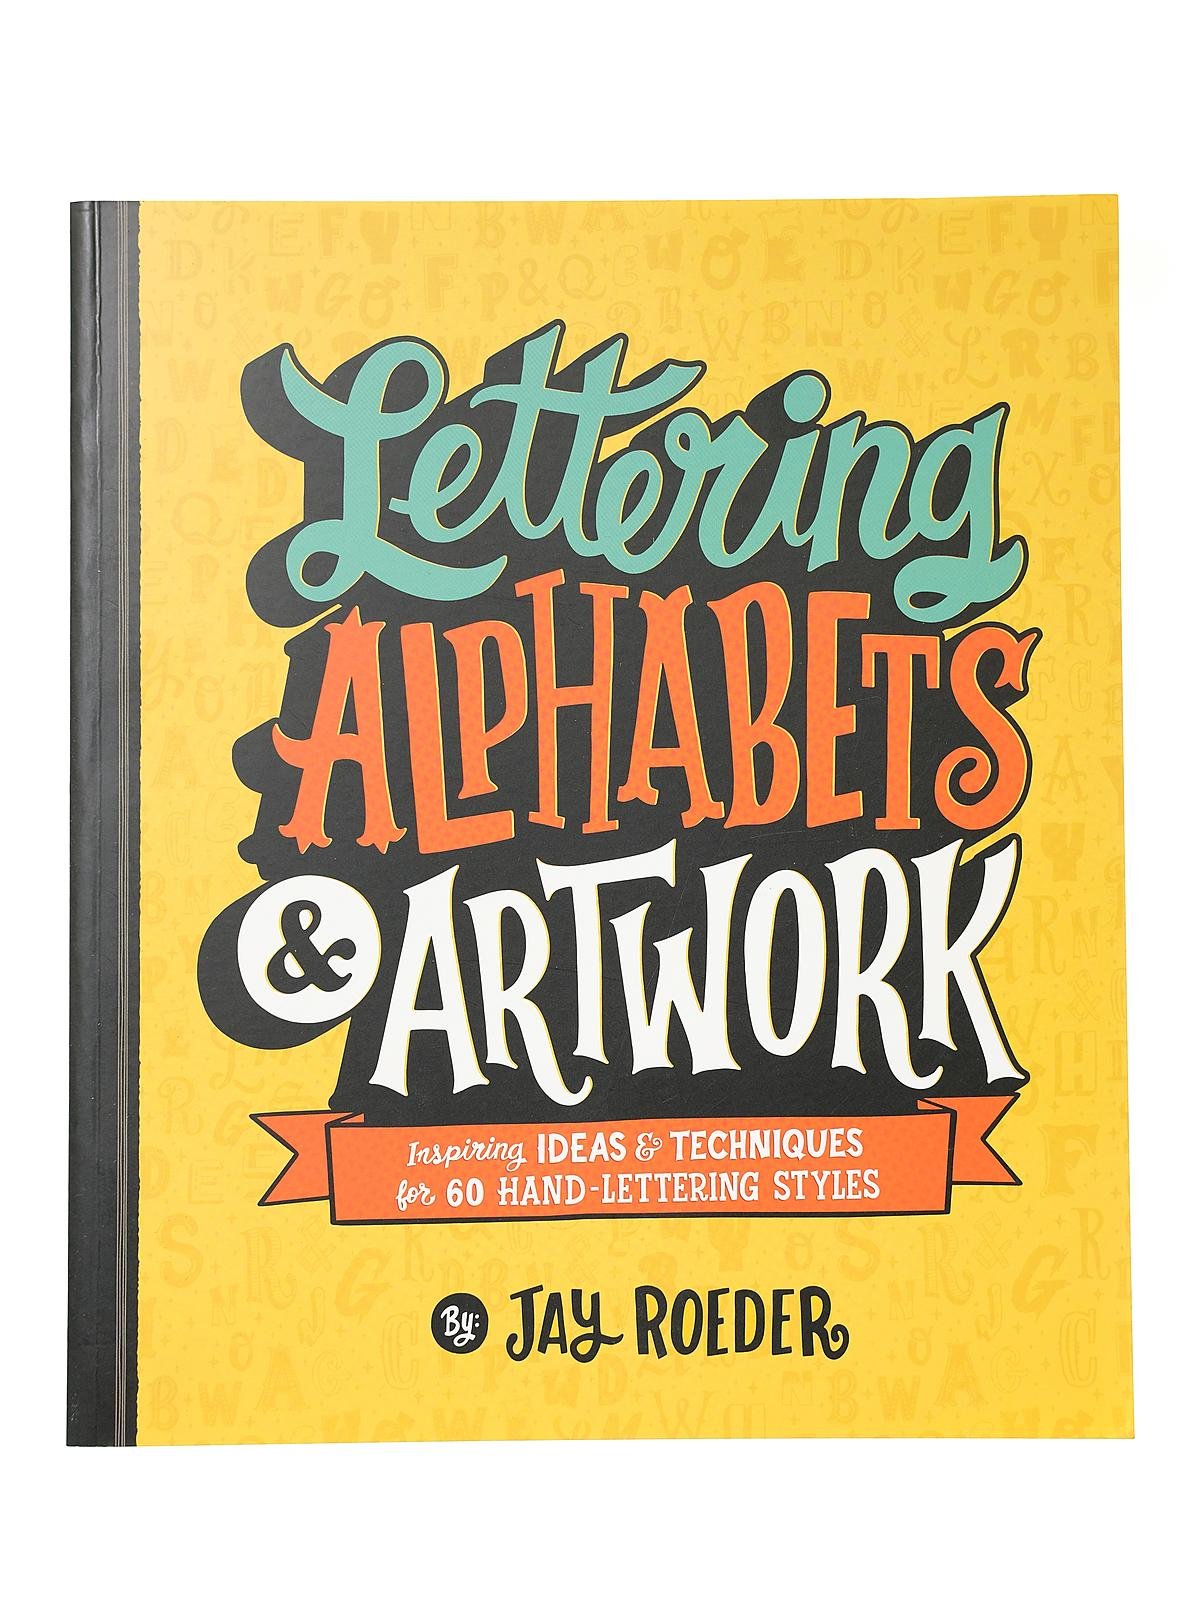 Lark - Lettering Alphabets & Artwork